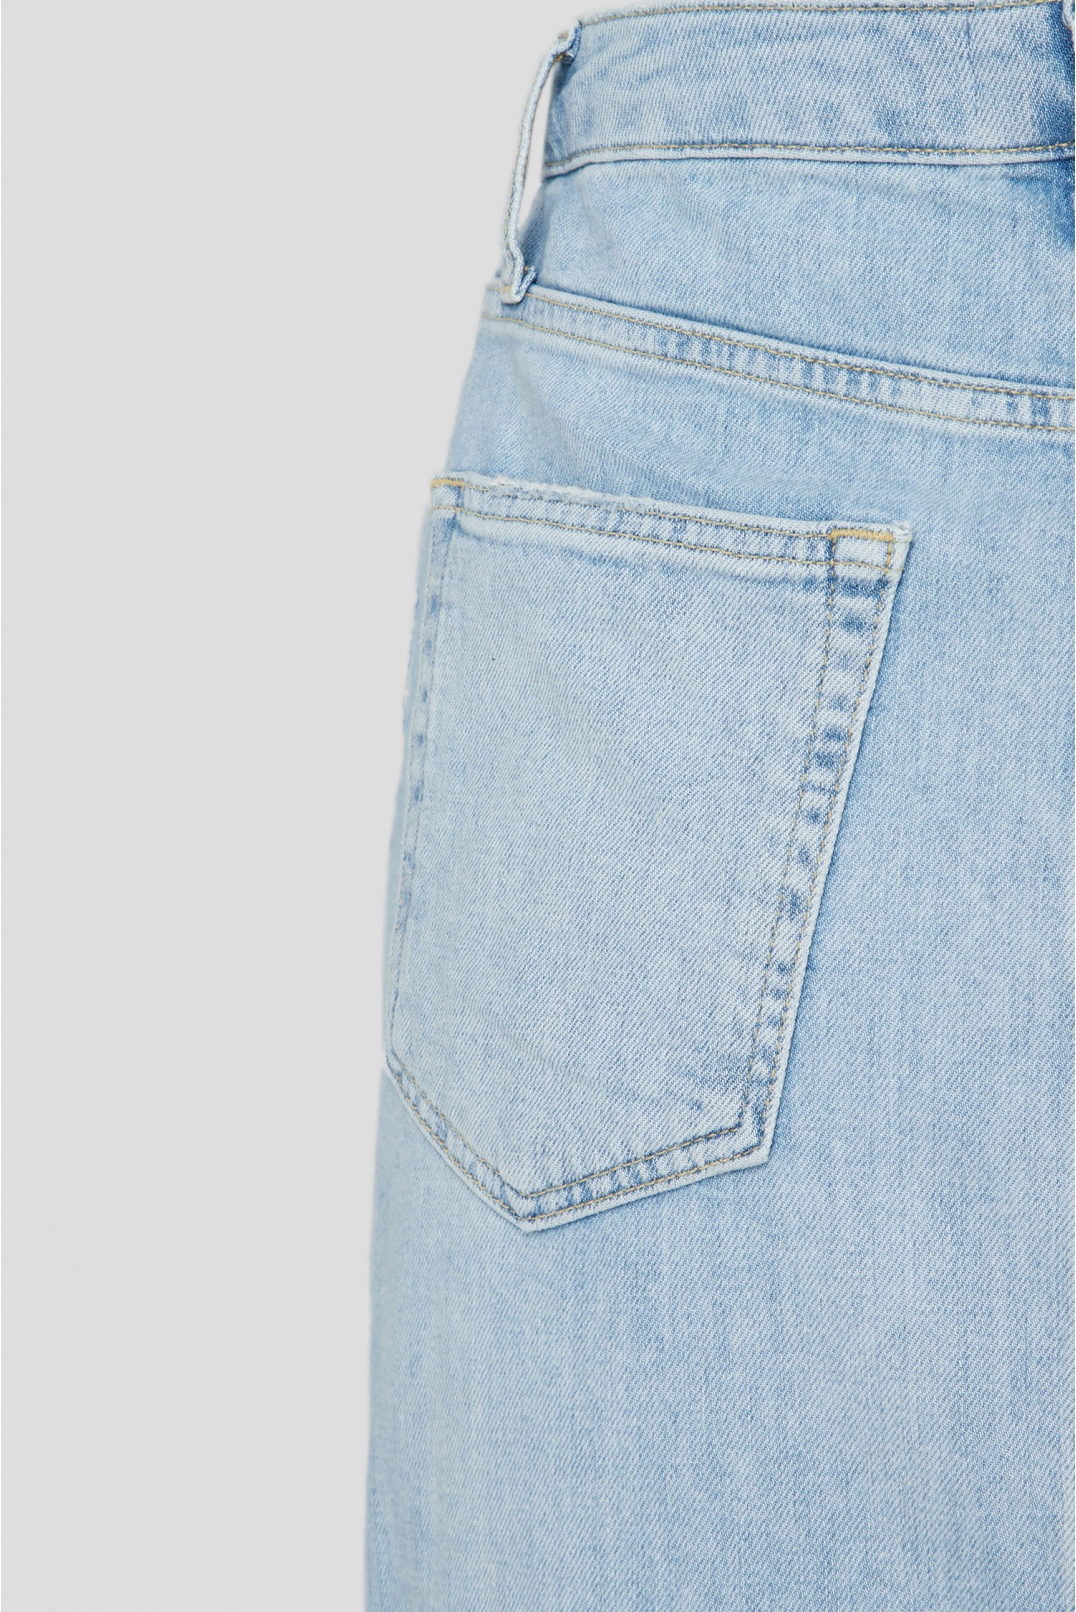 Женская голубая джинсовая юбка  - 4